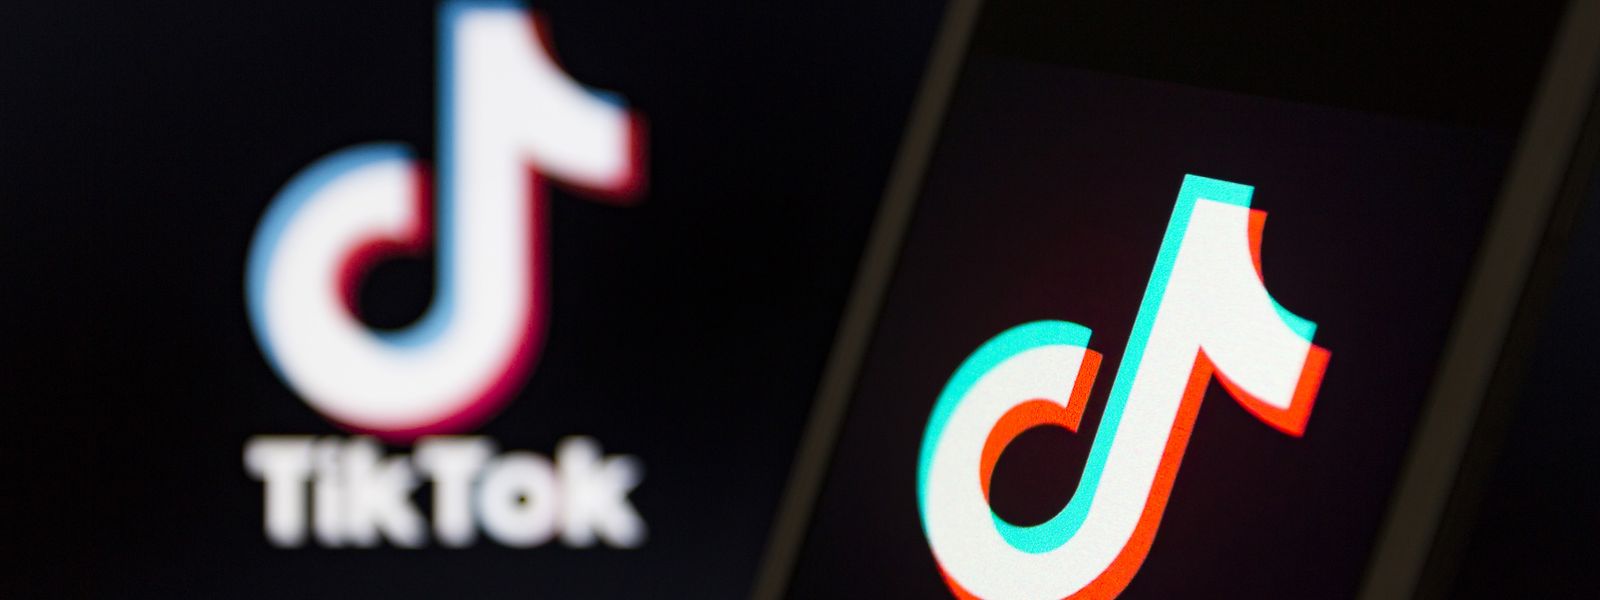 Der aus China stammende Dienst TikTok gehört mittlerweile zu den beliebtesten Apps, die Jugendliche nutzen.